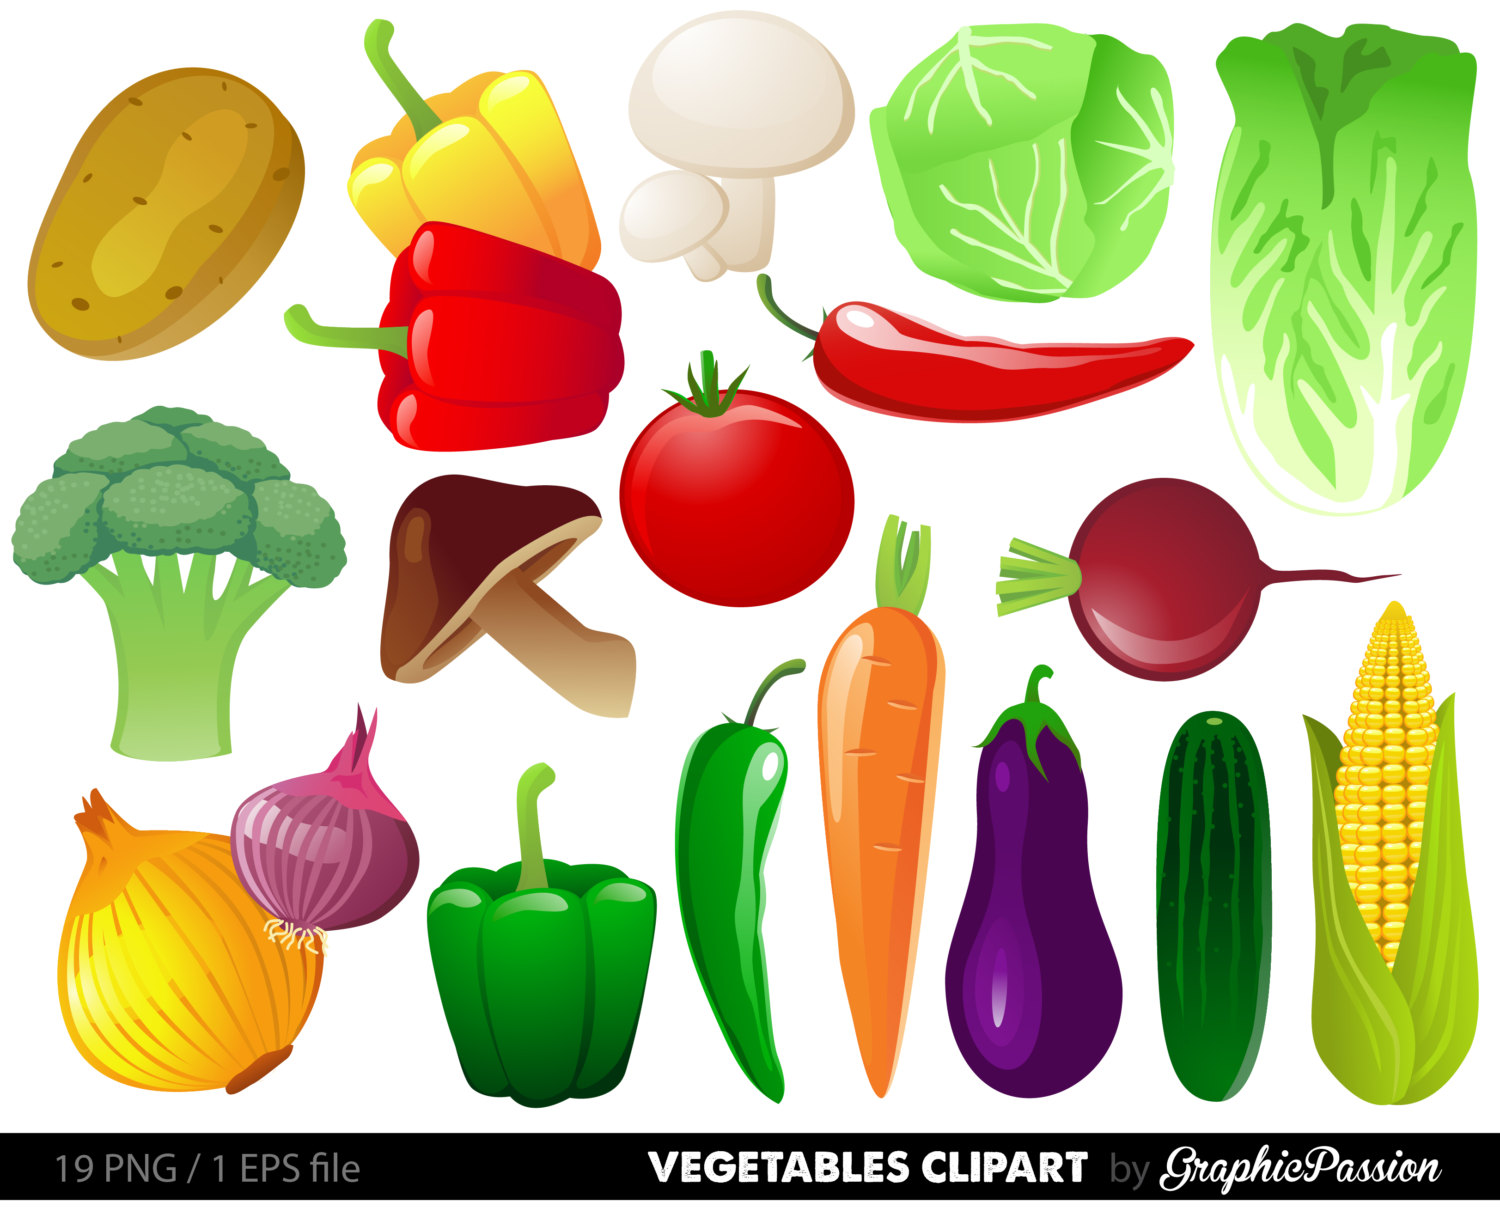 Cute vegetable clipart - Vegg